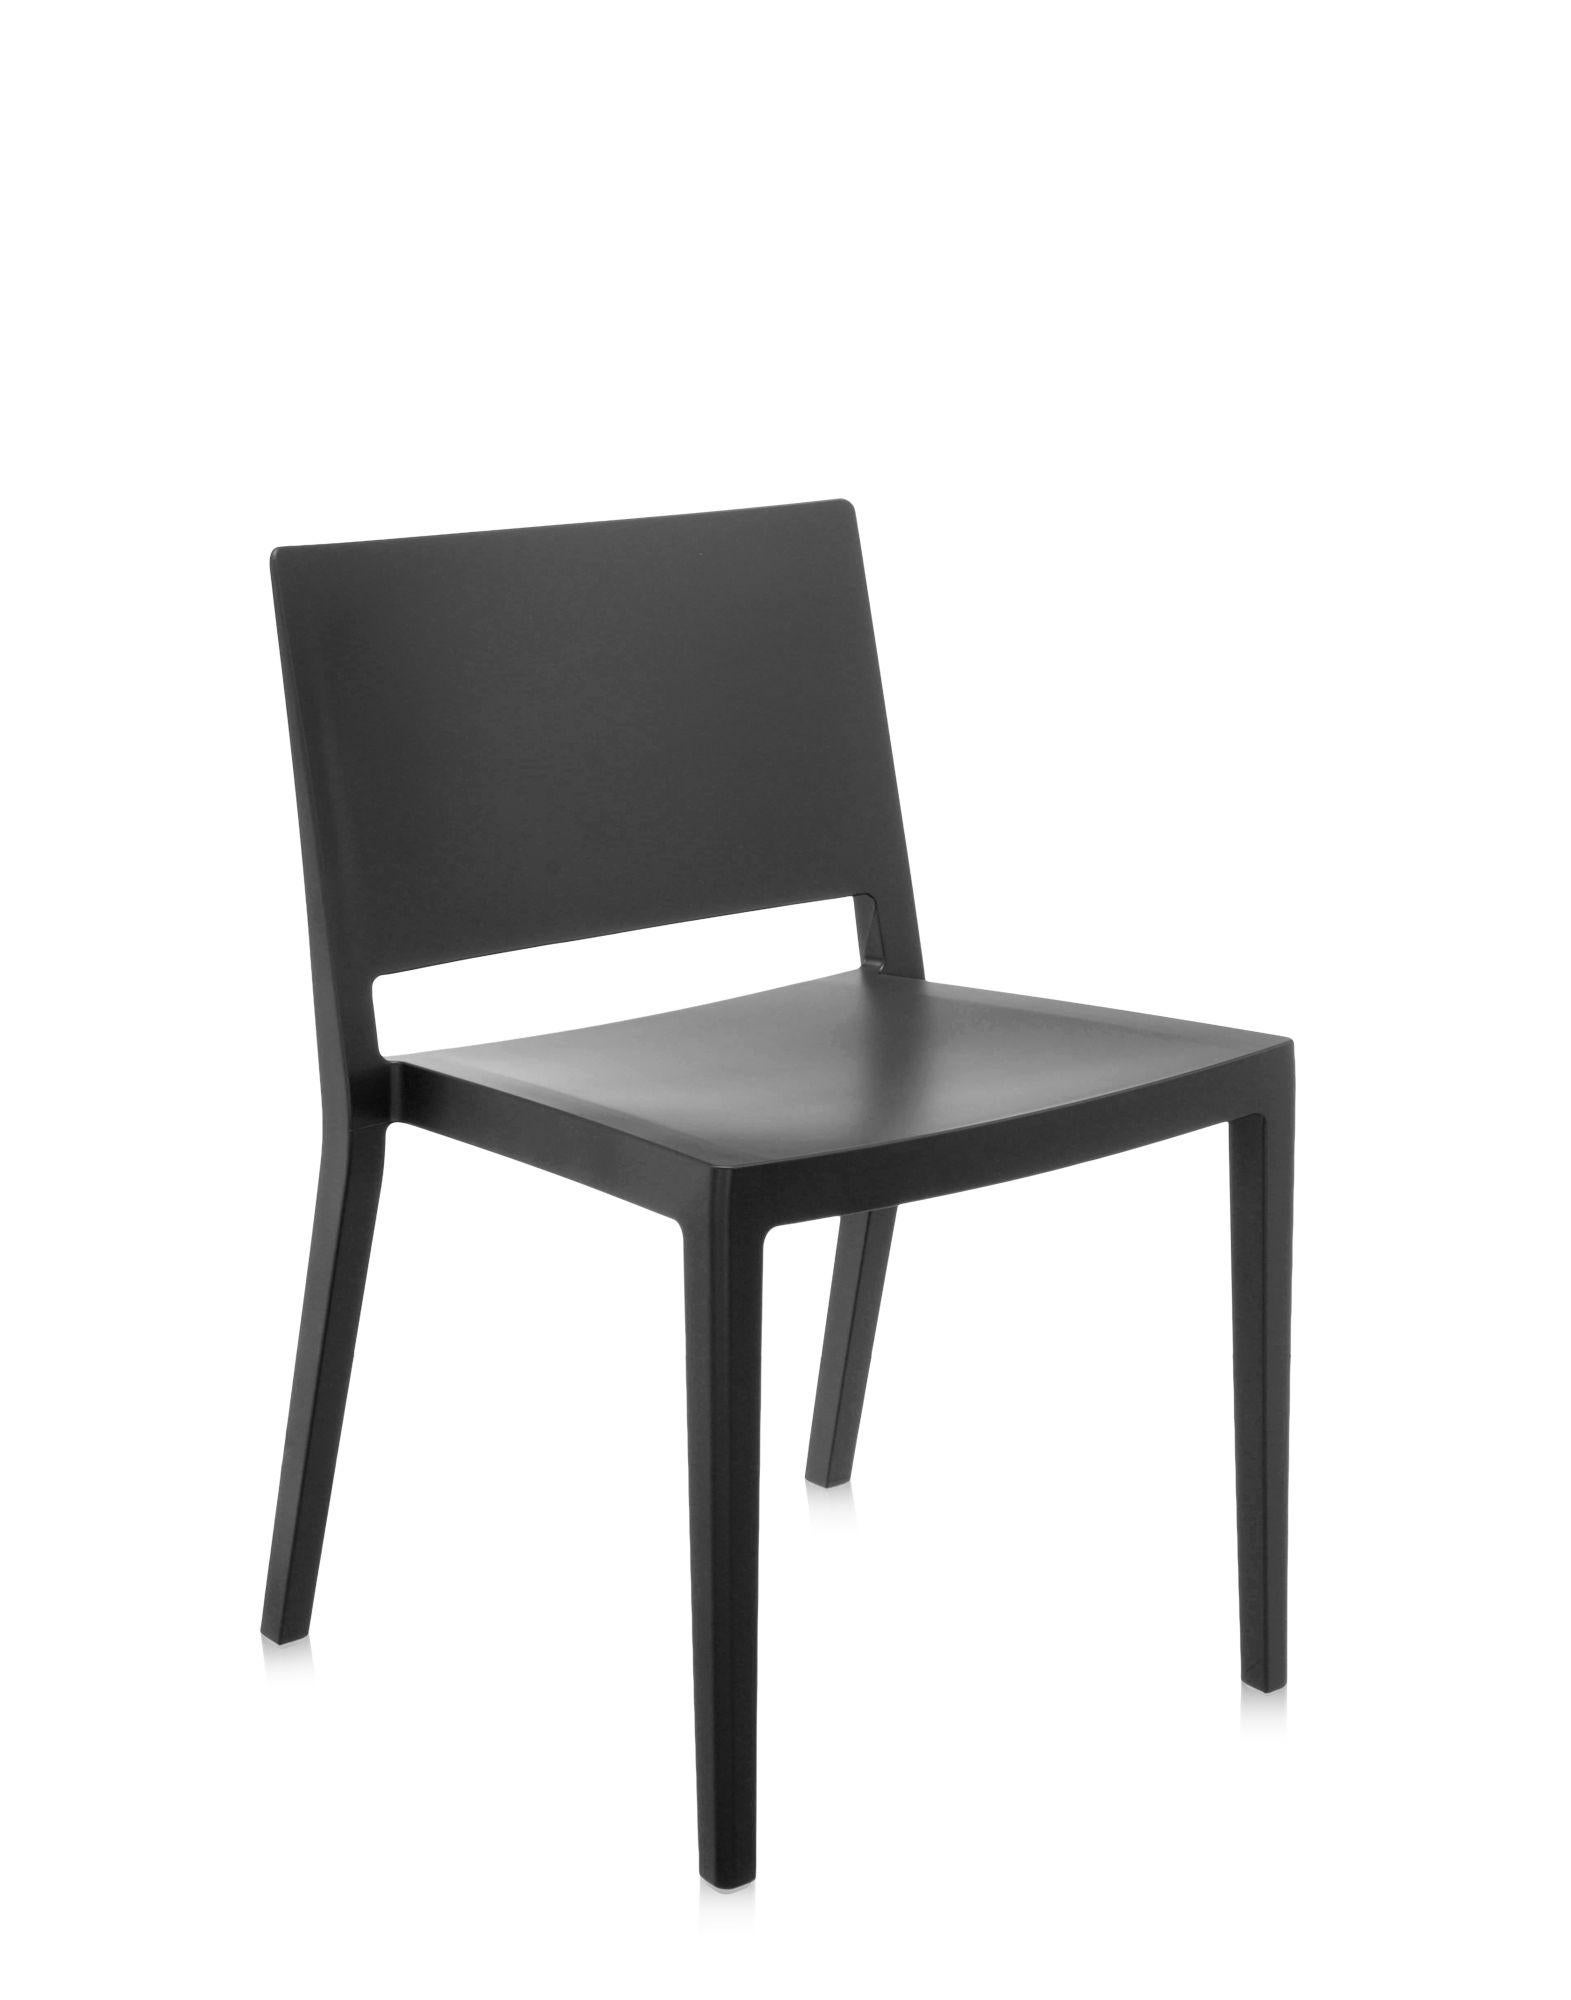 Une chaise légère, aux lignes essentielles et strictes, en phase avec le style minimaliste et raffiné de son créateur, Piero Lissoni. Lizz est désormais également disponible dans une version mate en six couleurs, évocatrice du design typiquement